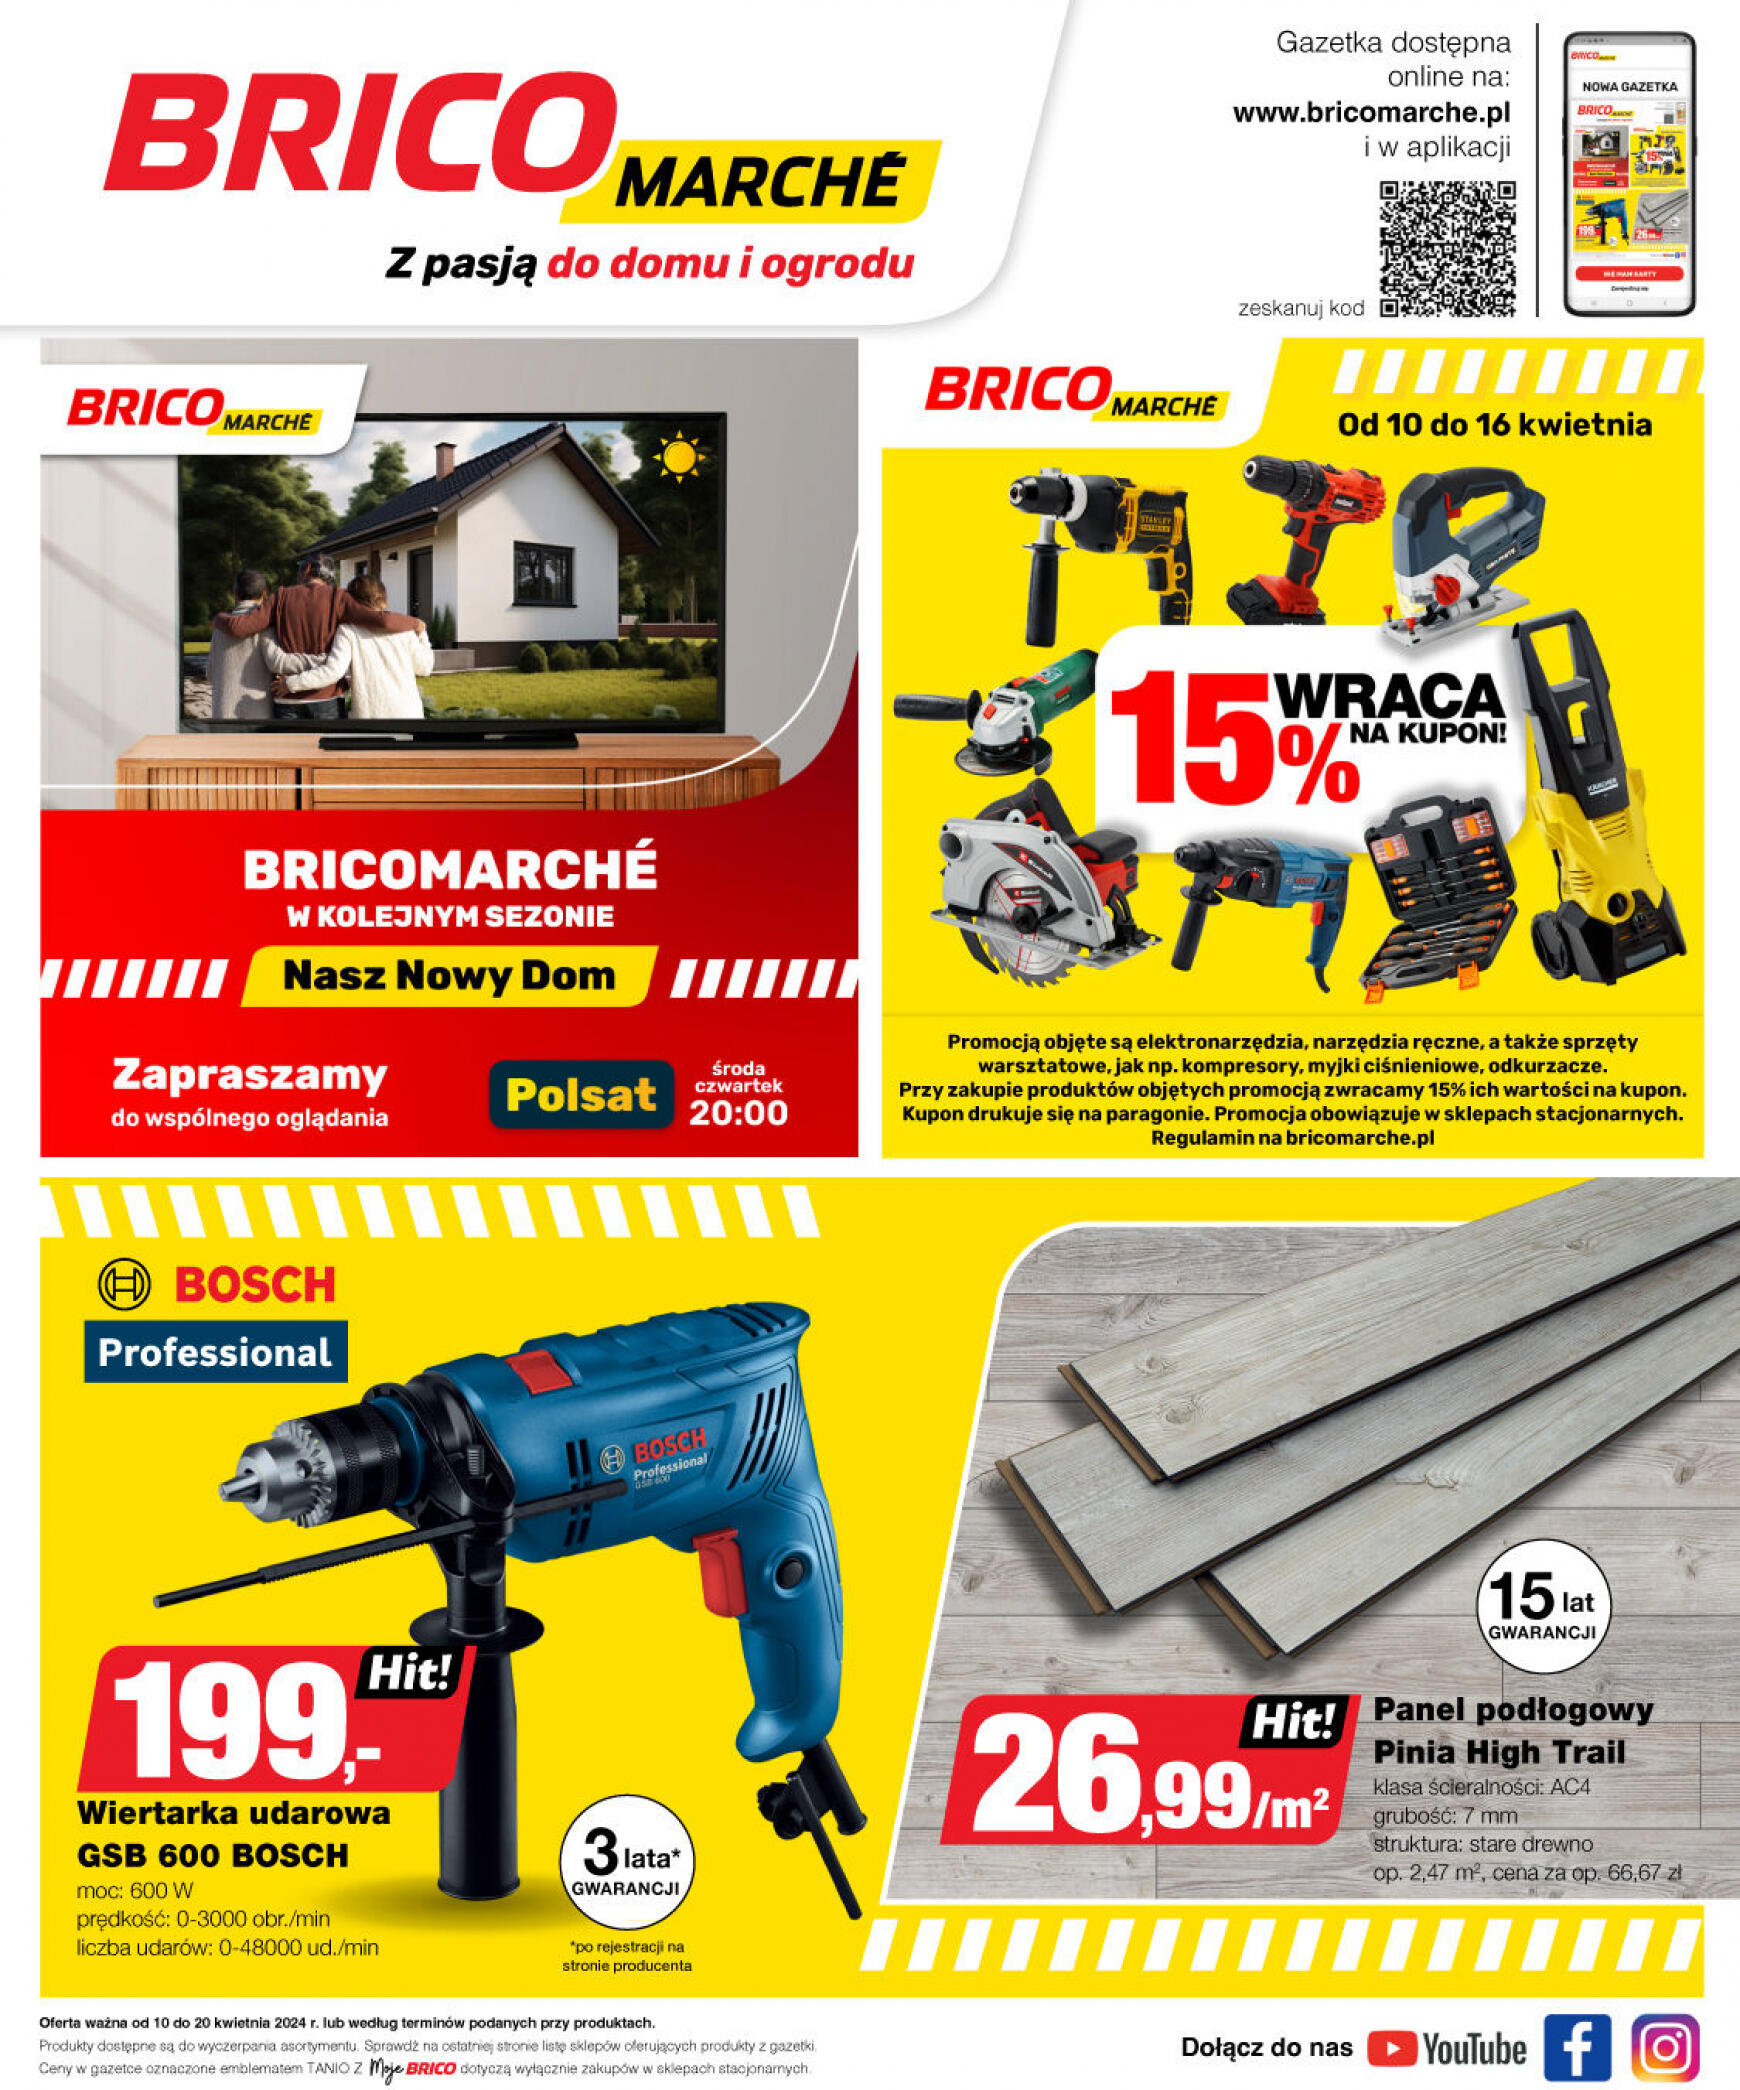 brico-marche - Bricomarché gazetka aktualna ważna od 10.04. - 20.04. - page: 18